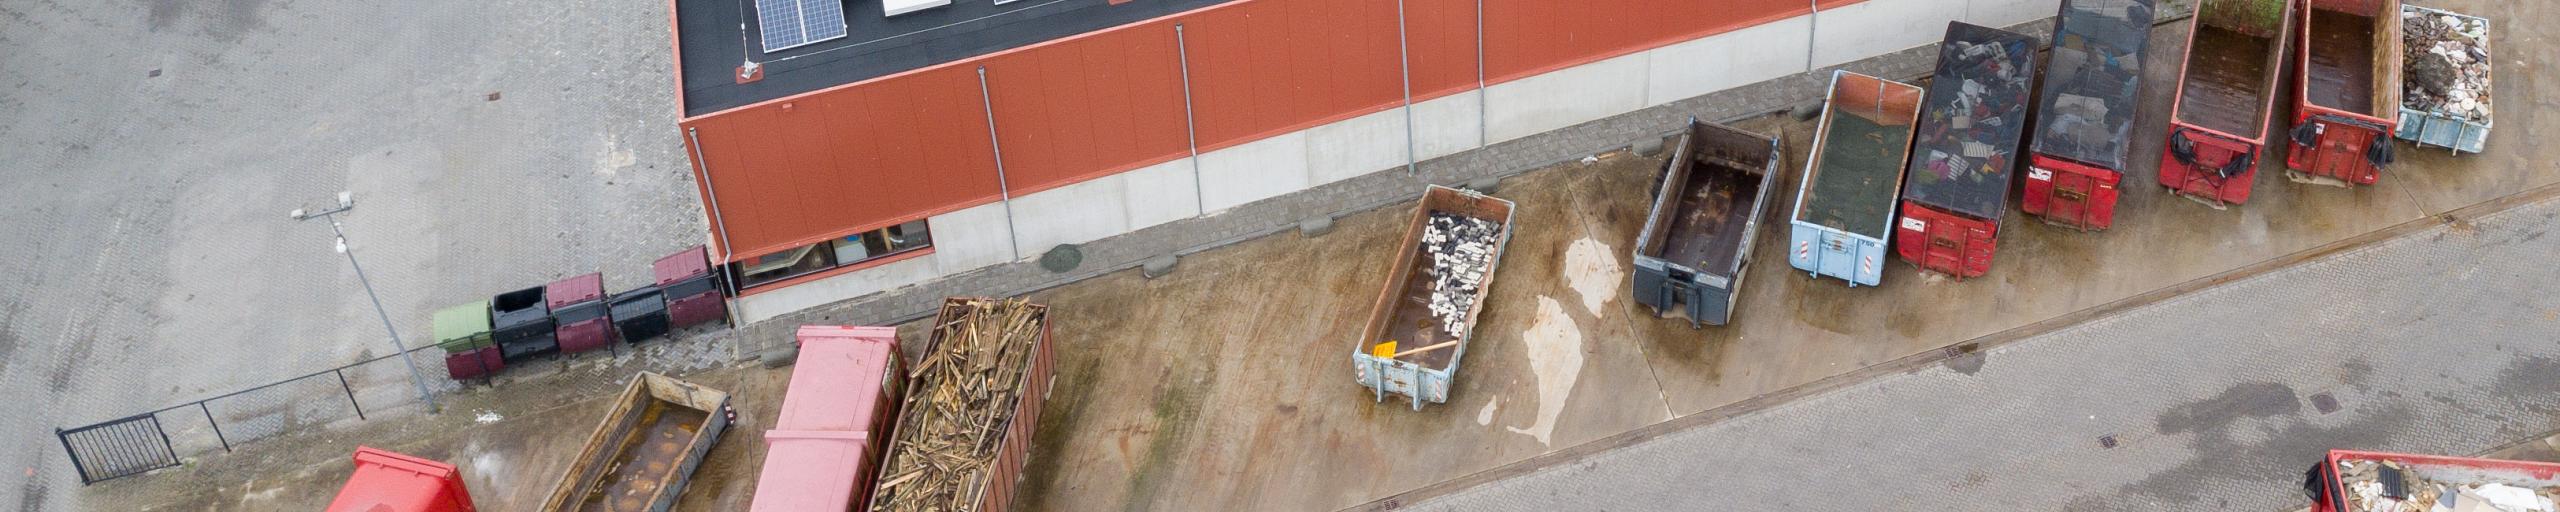 Luchtfoto van het afvalbrengstation